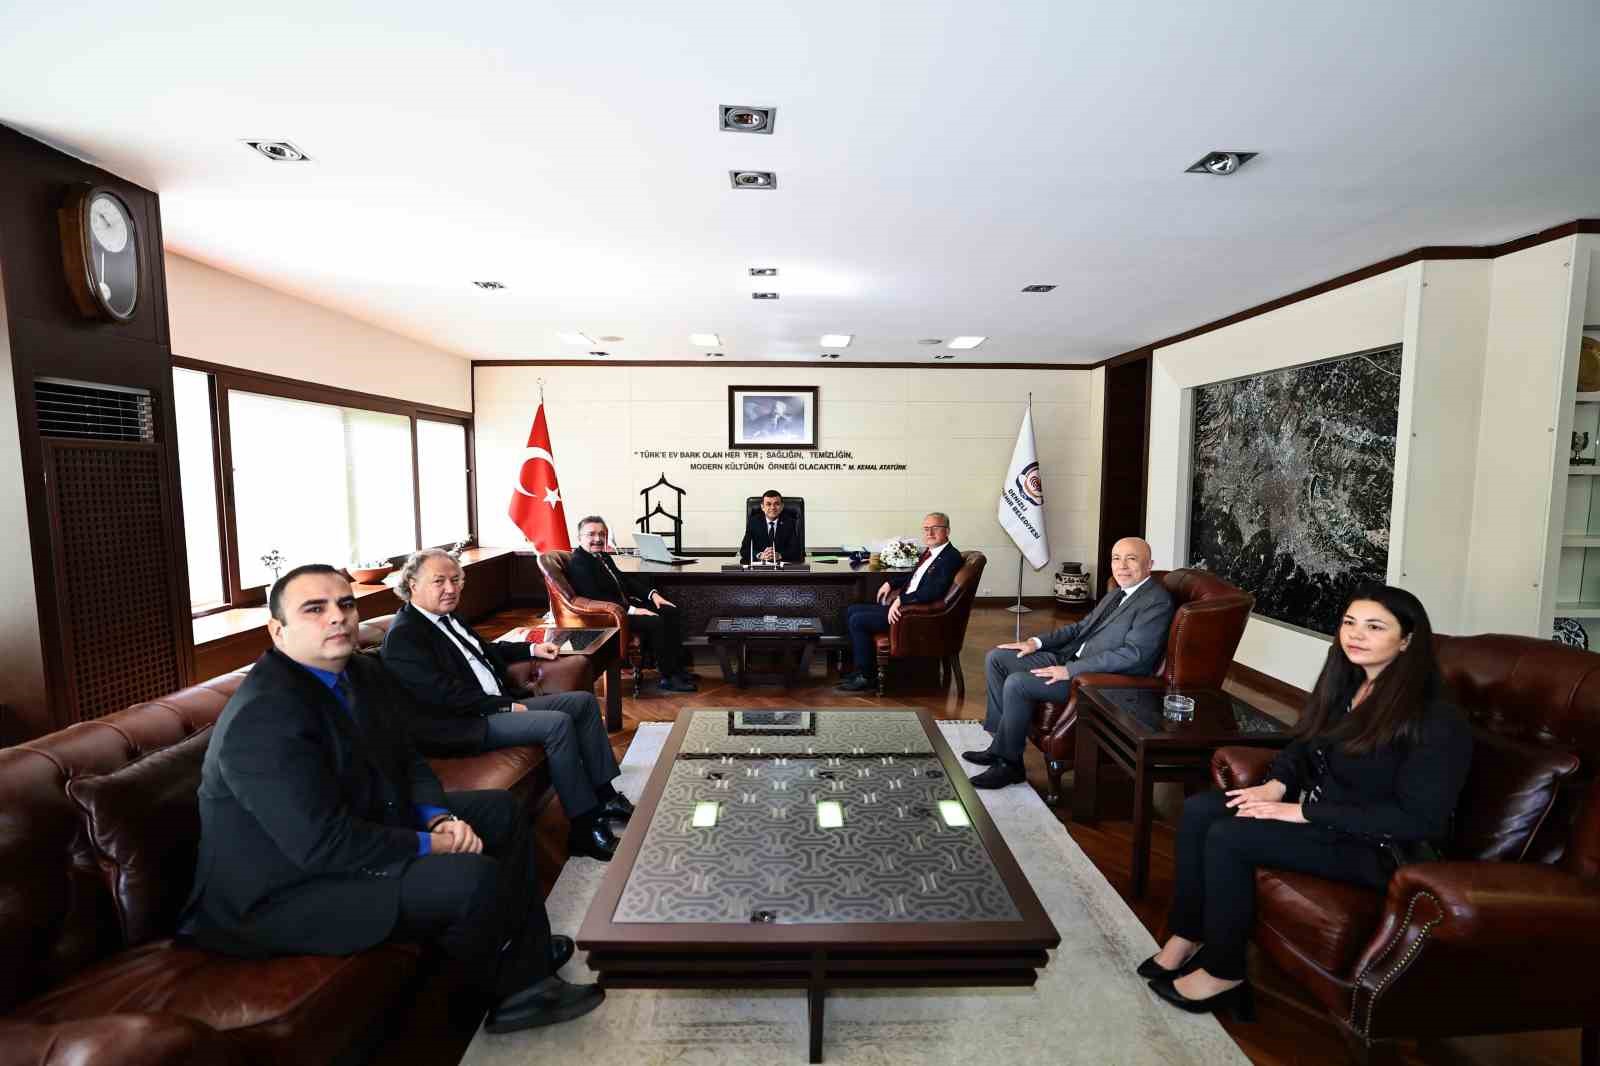 Başkan Çavuşoğlu; “Hedefimiz ilk 5 yılda Pamukkale’ye gelen turistlerden 1 milyonunu Denizli’de ağırlamak”
